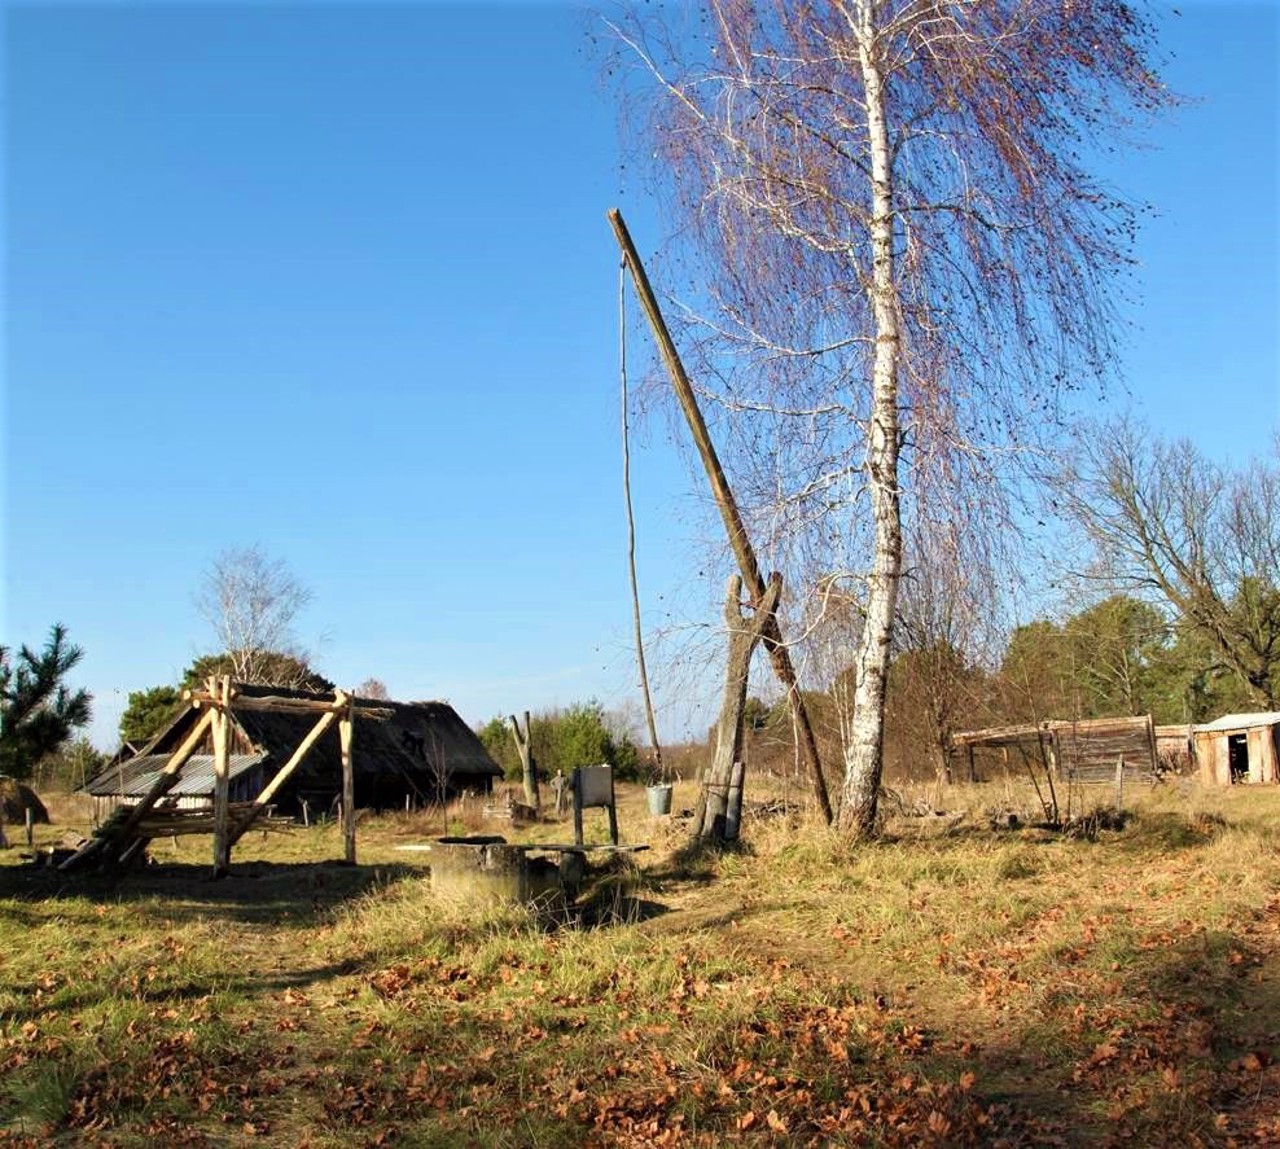 Svalovychi village